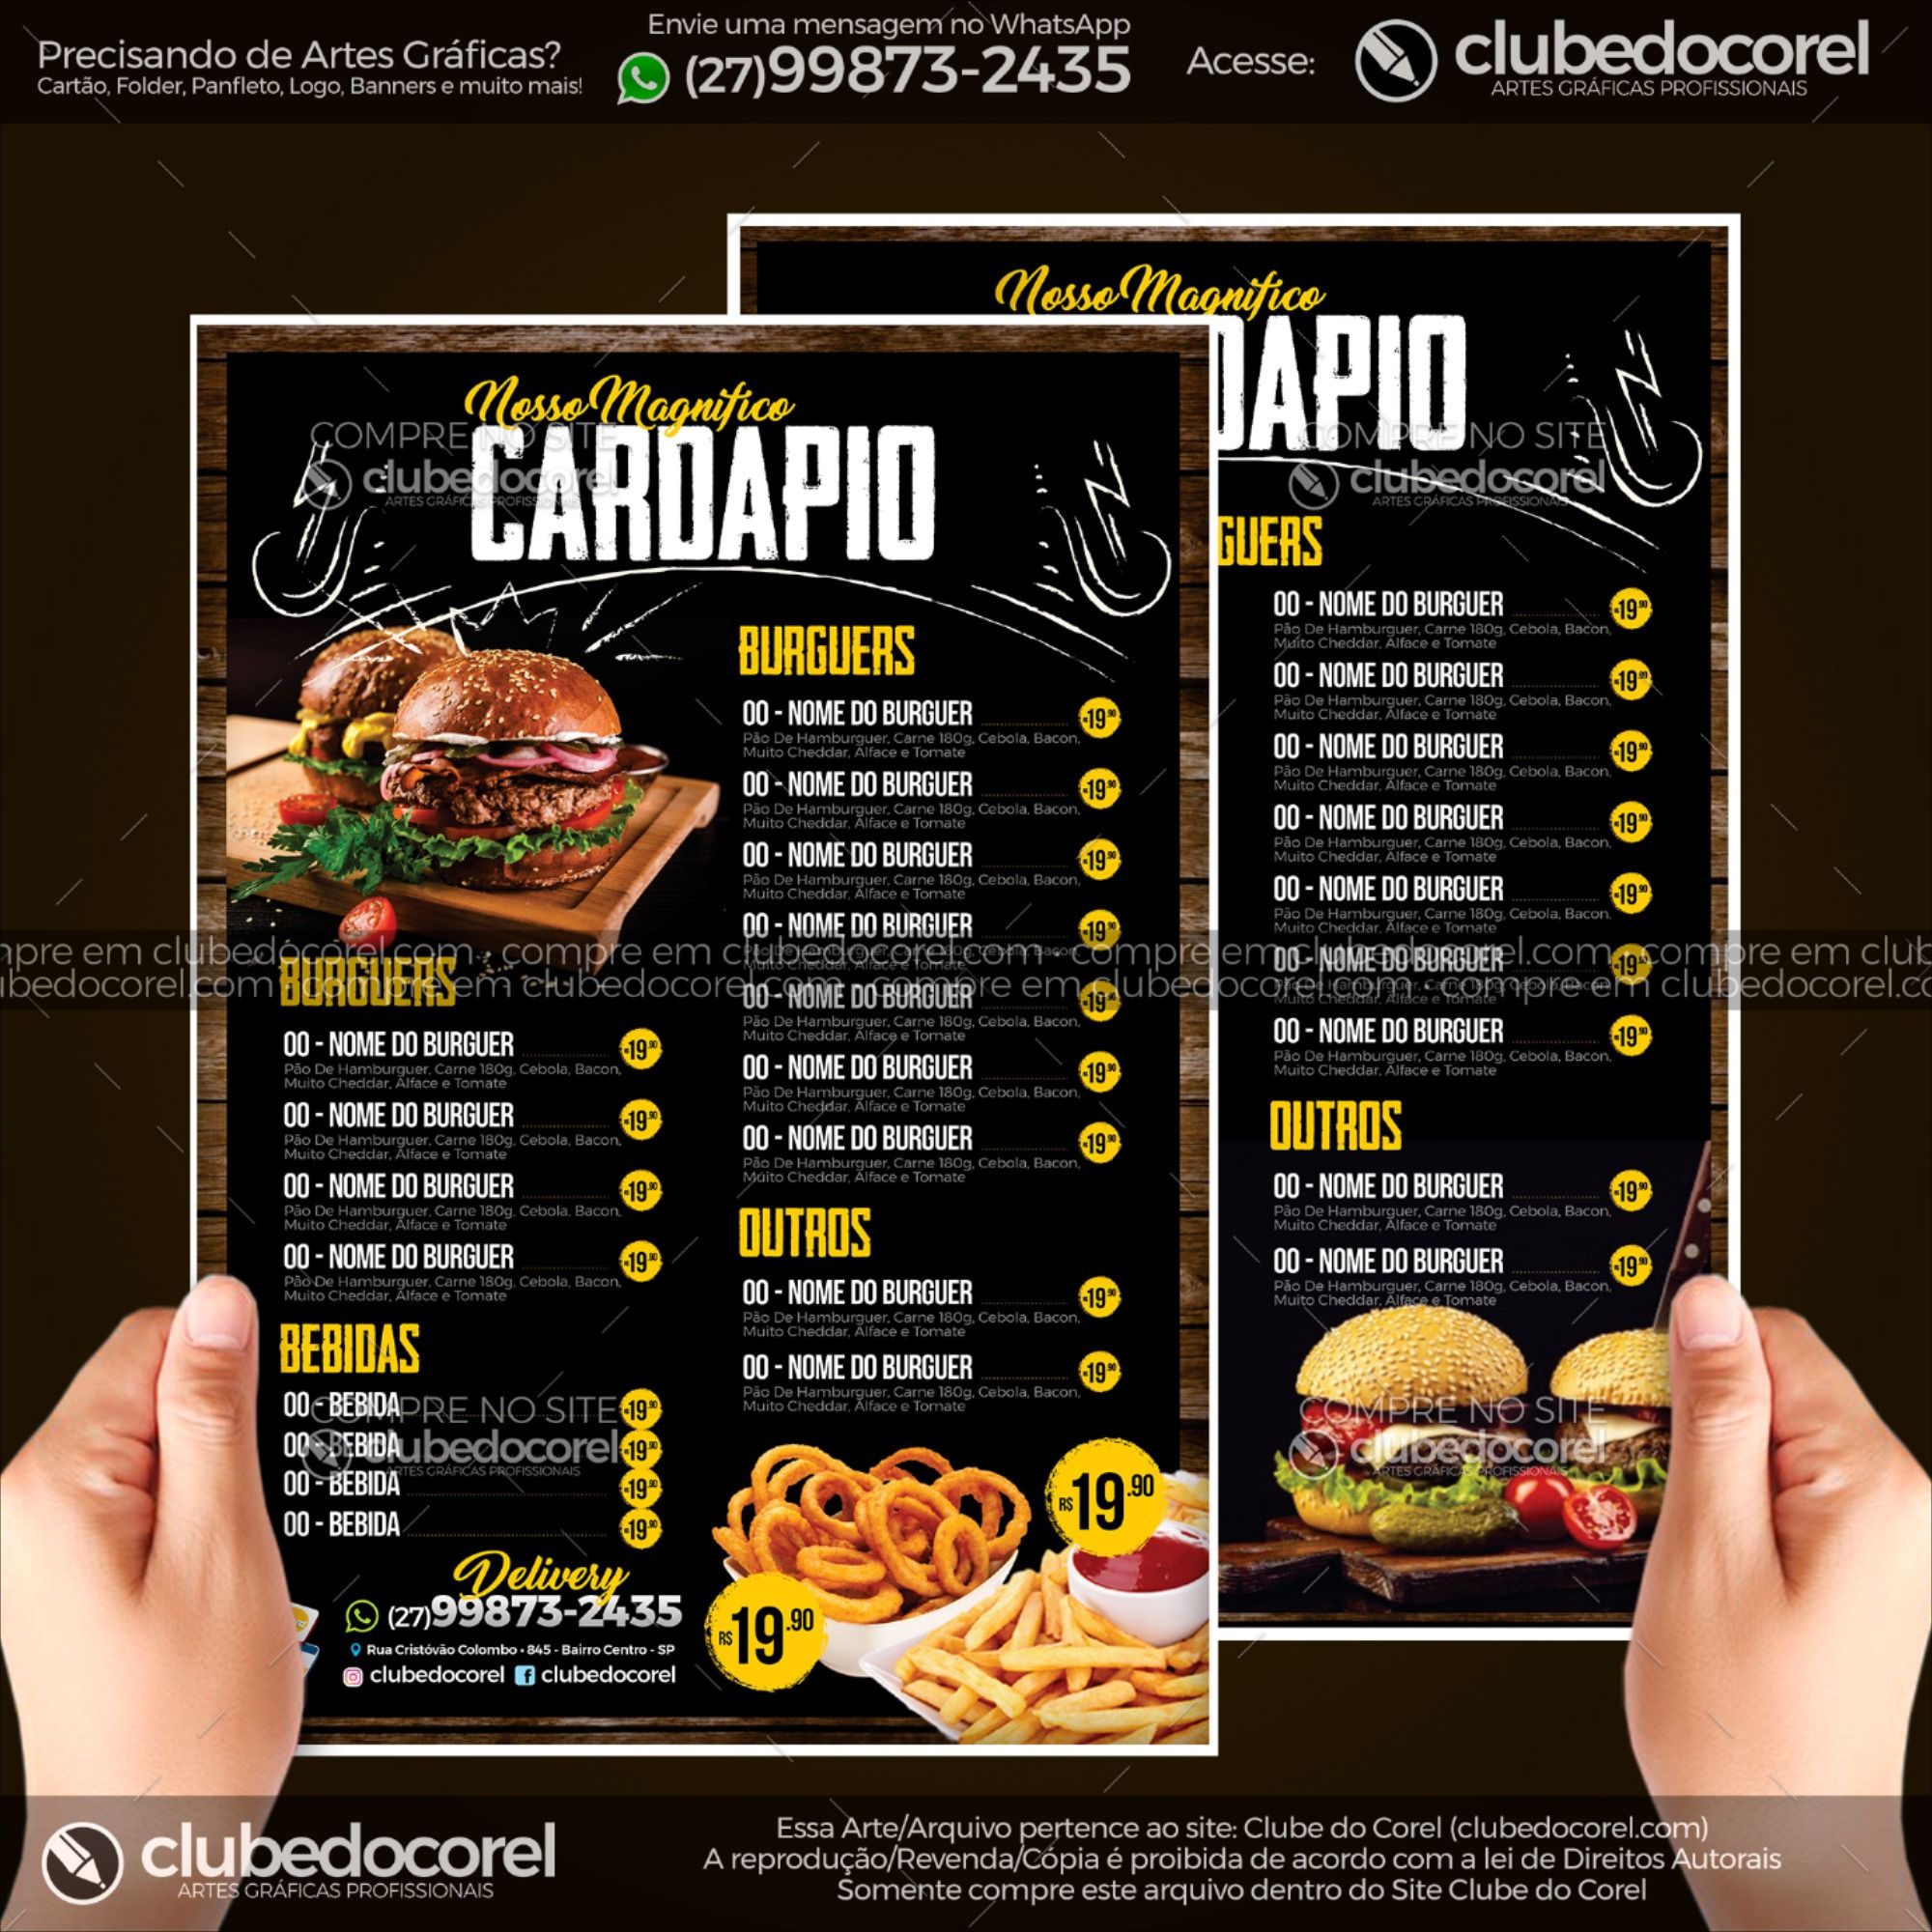 Cardápio Lanchonete #03 - Burguer Gourmet (CDR e PDF) | Clube do Corel |  Cardápio lanchonete, Cardapio de lanches, Menu de restaurante